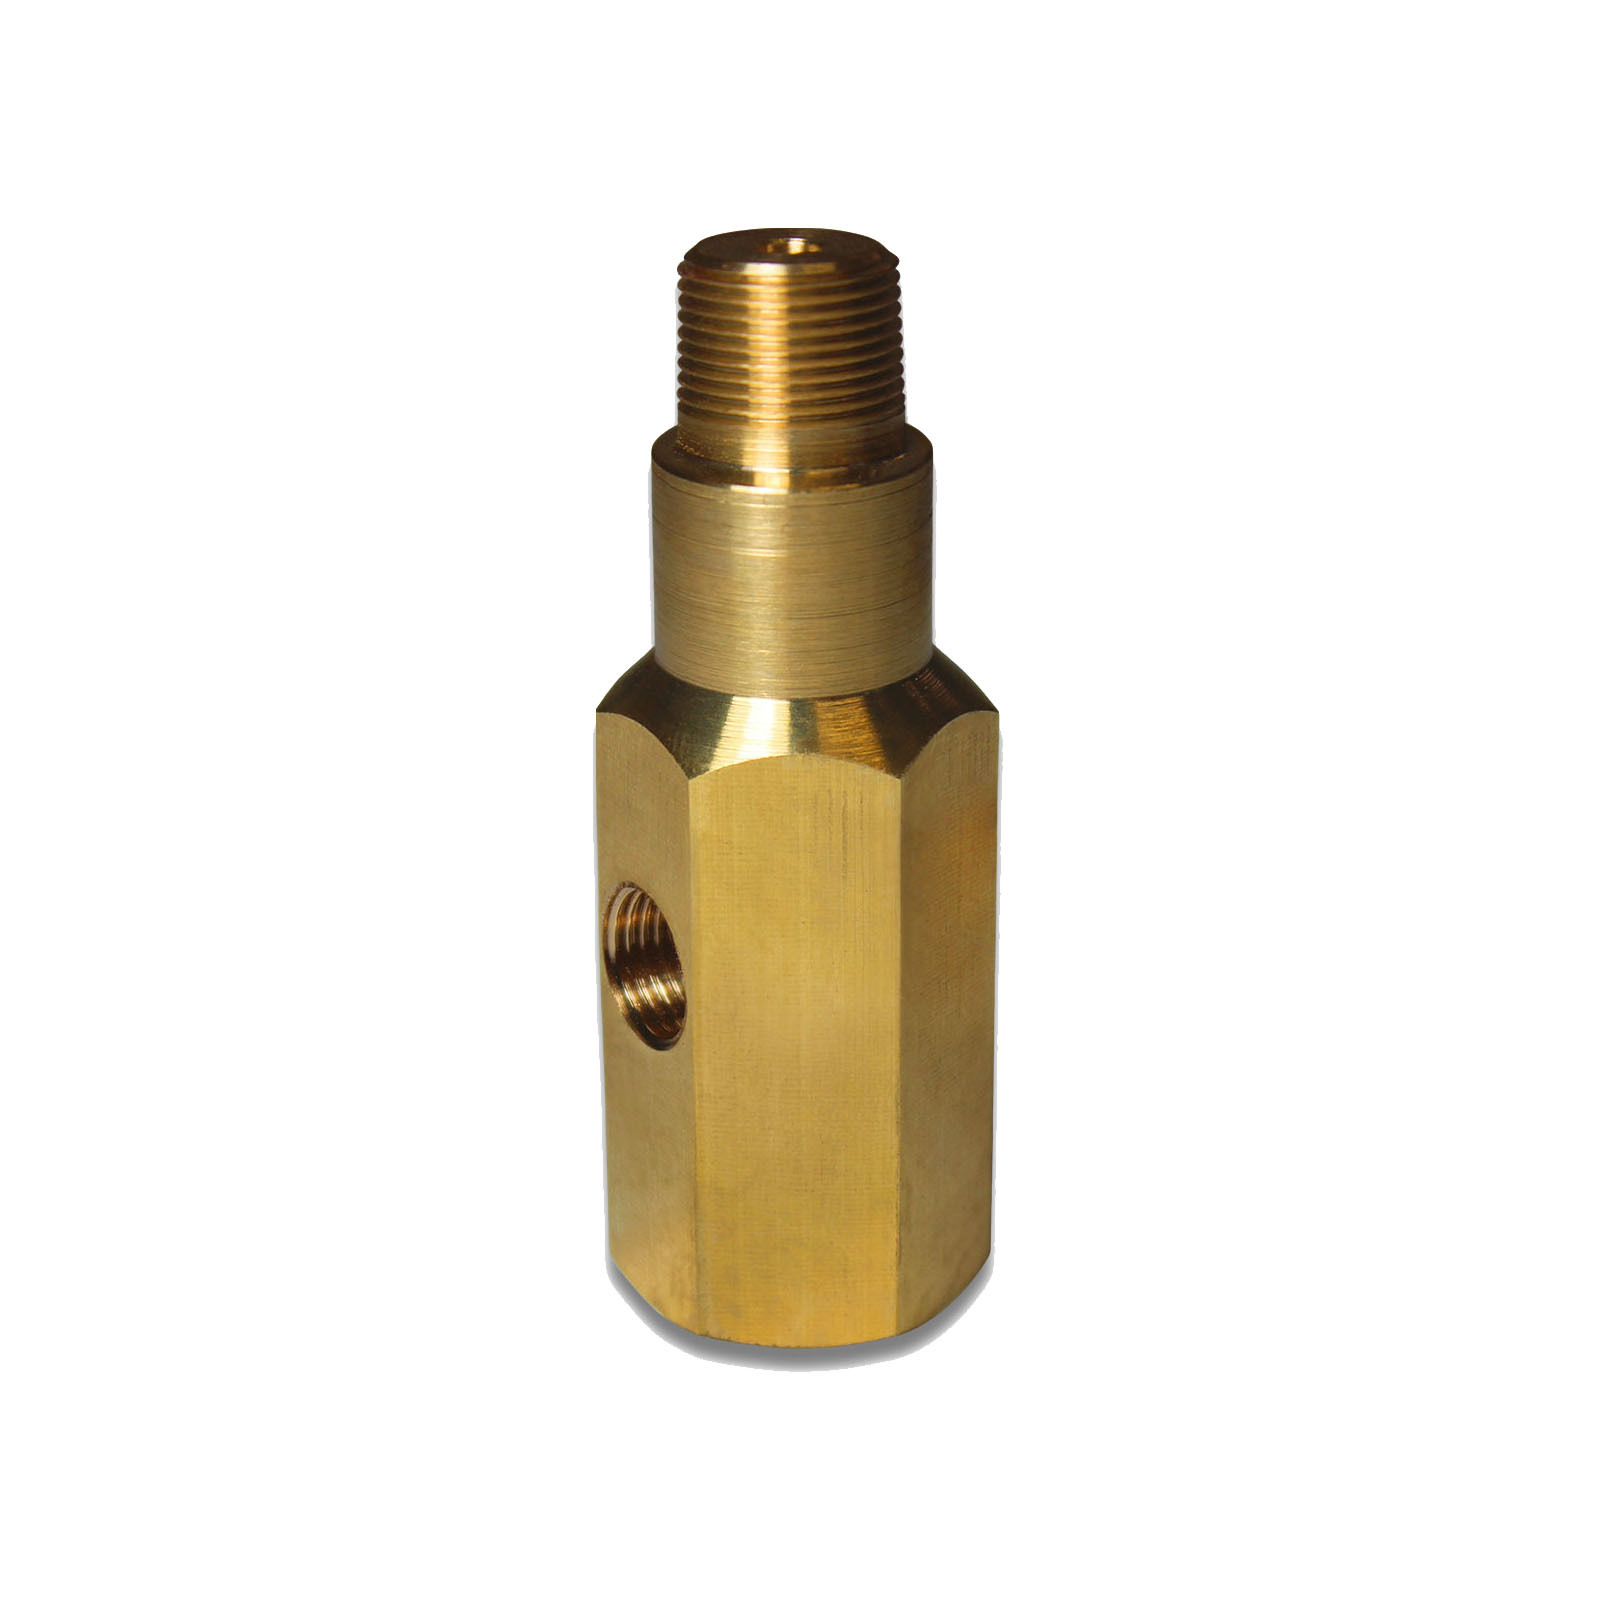 Oil Pressure Gauge Adapter 1 4 Npt Brass Saas T Piece Sender